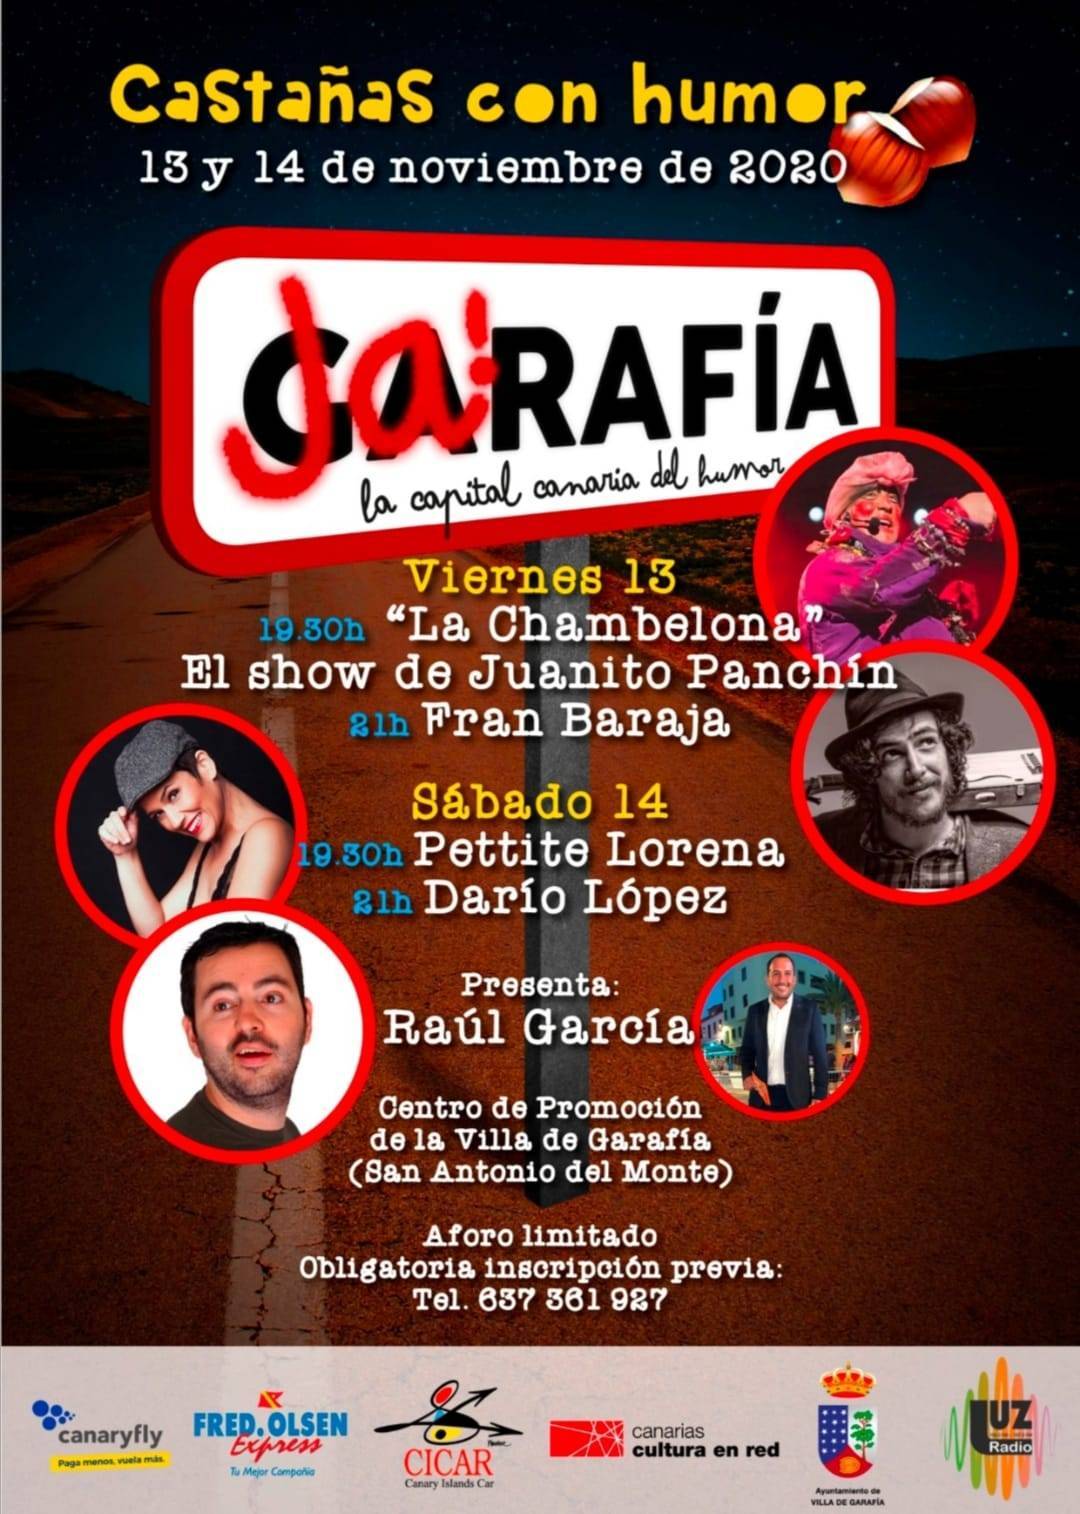 Castañas con humor (2020) - Garafía (Santa Cruz de Tenerife)